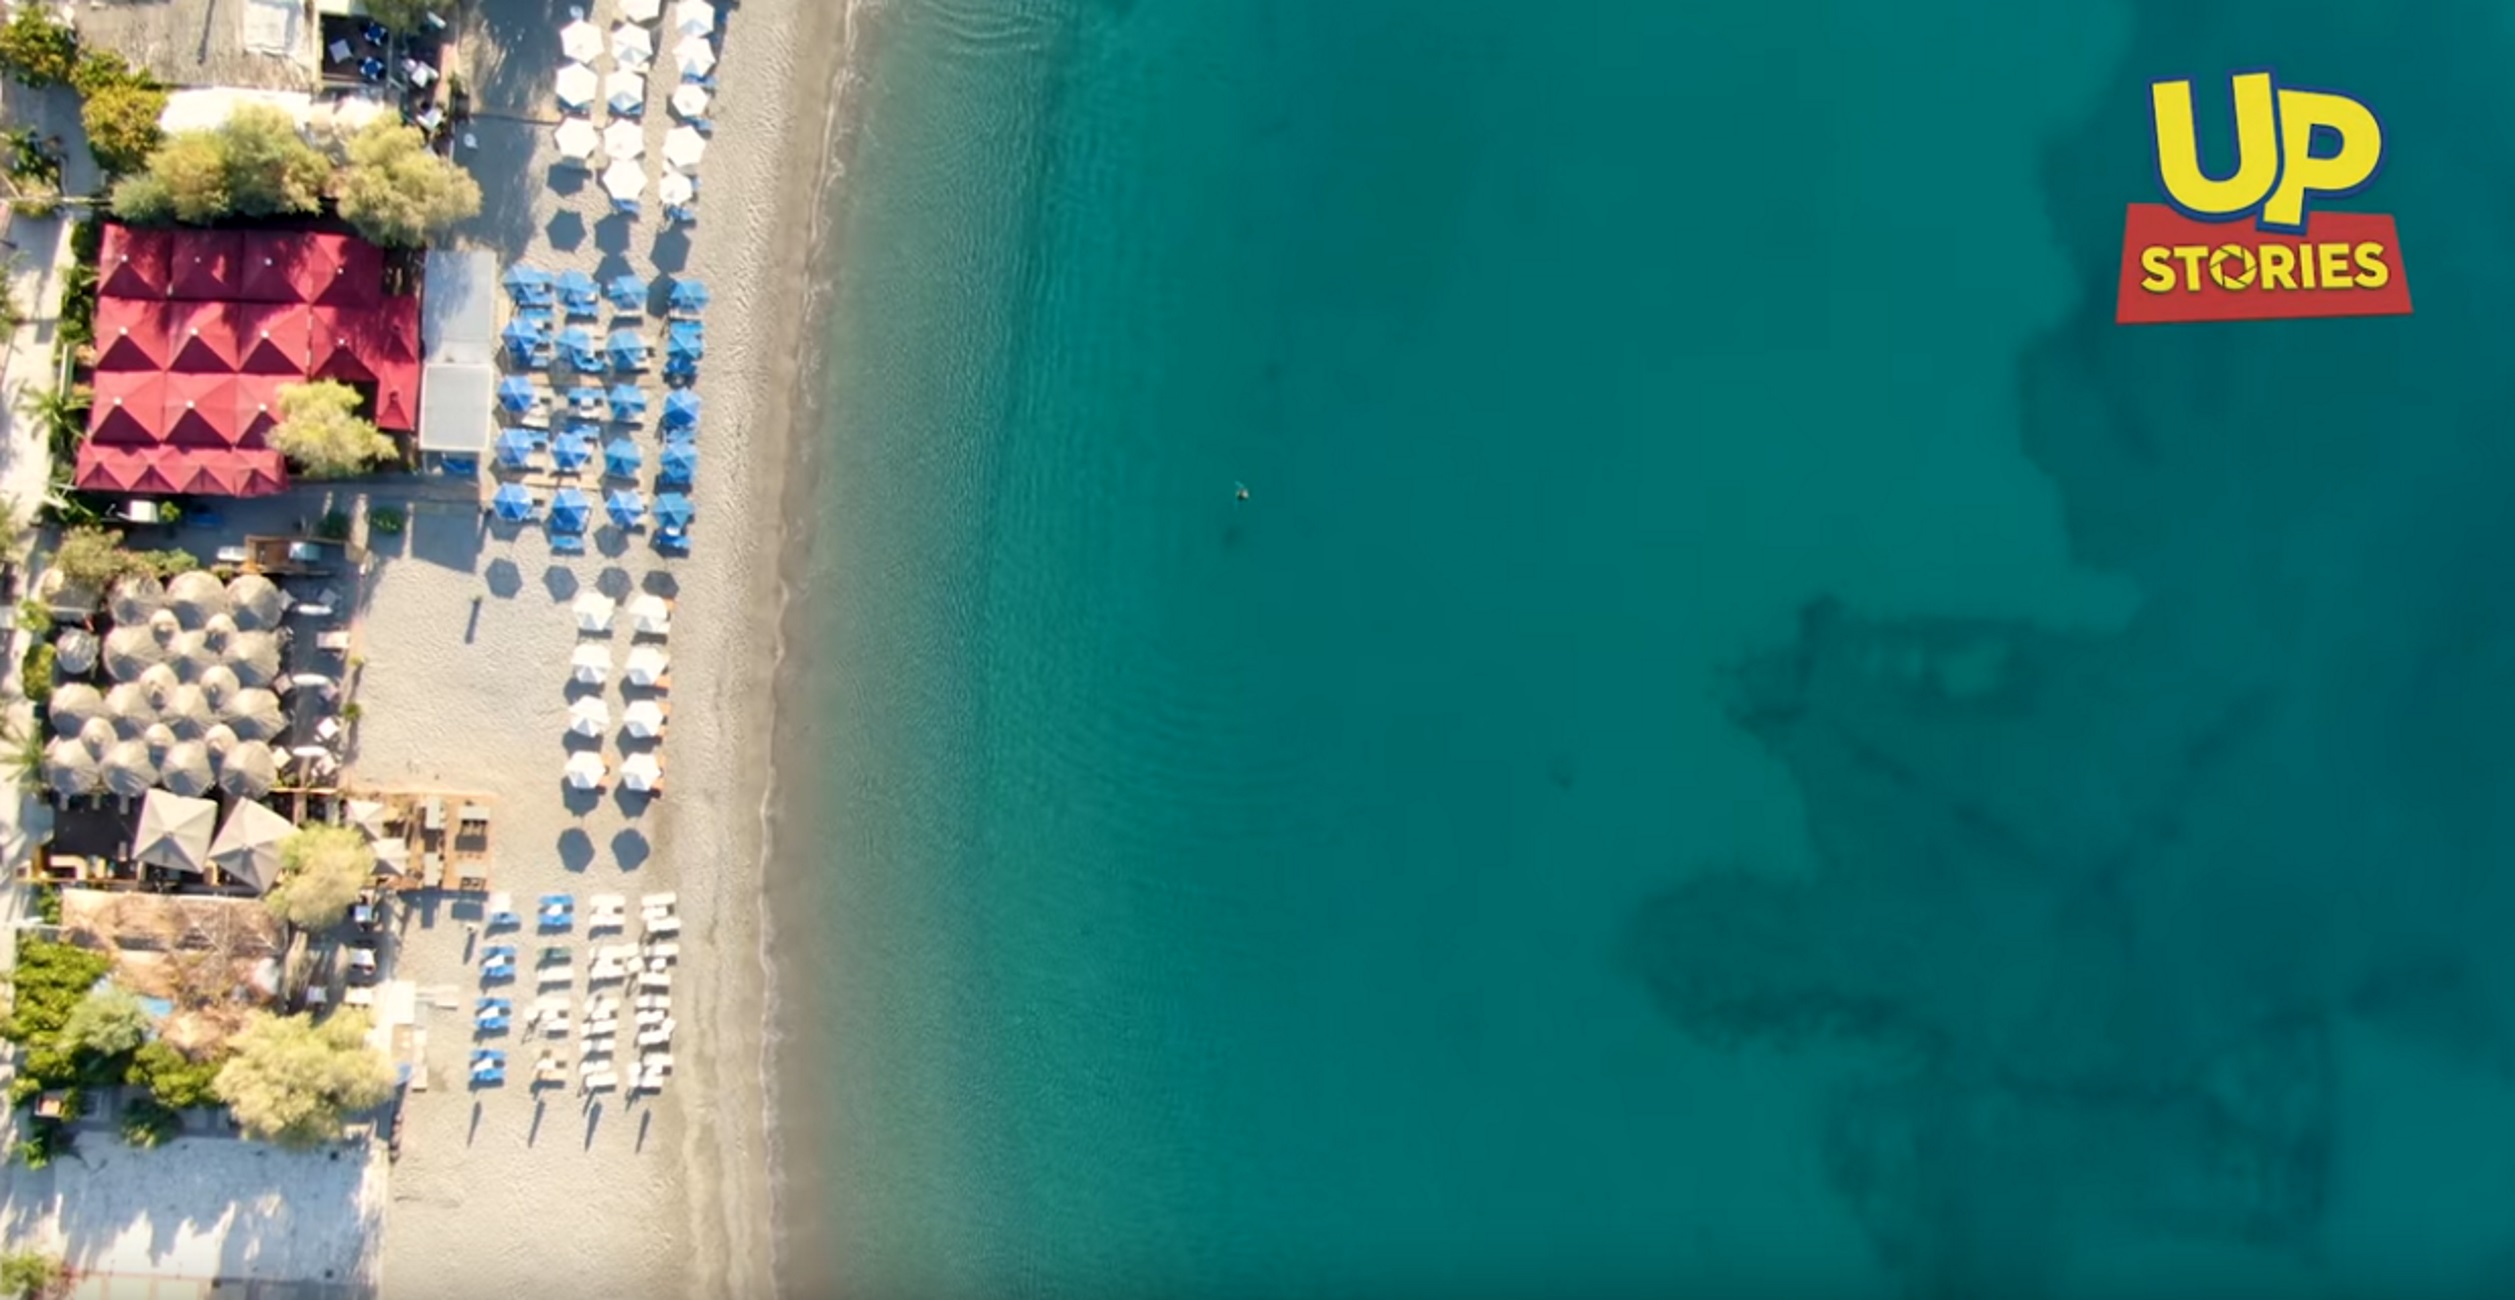 Μεσσηνία: Εξωτικές παραλίες 3 ώρες από την Αθήνα! Βουτιές σε βραβευμένες και πεντακάθαρες θάλασσες (Βίντεο)